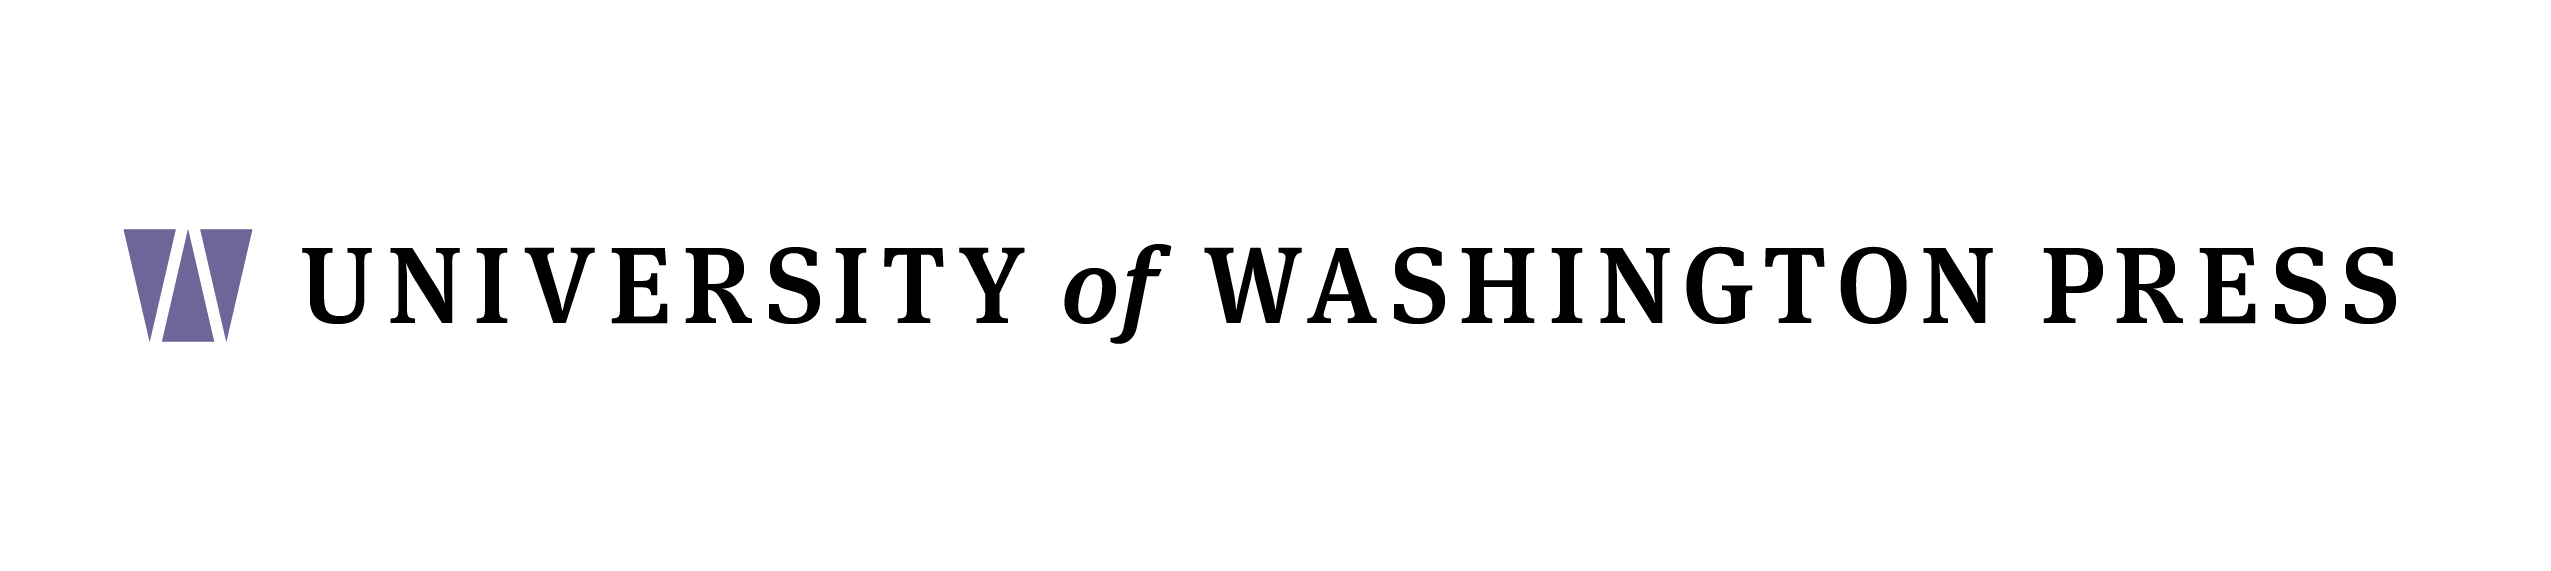 Black and White University of Washington Logo - UW Press joins UW Libraries | University of Washington Press Blog